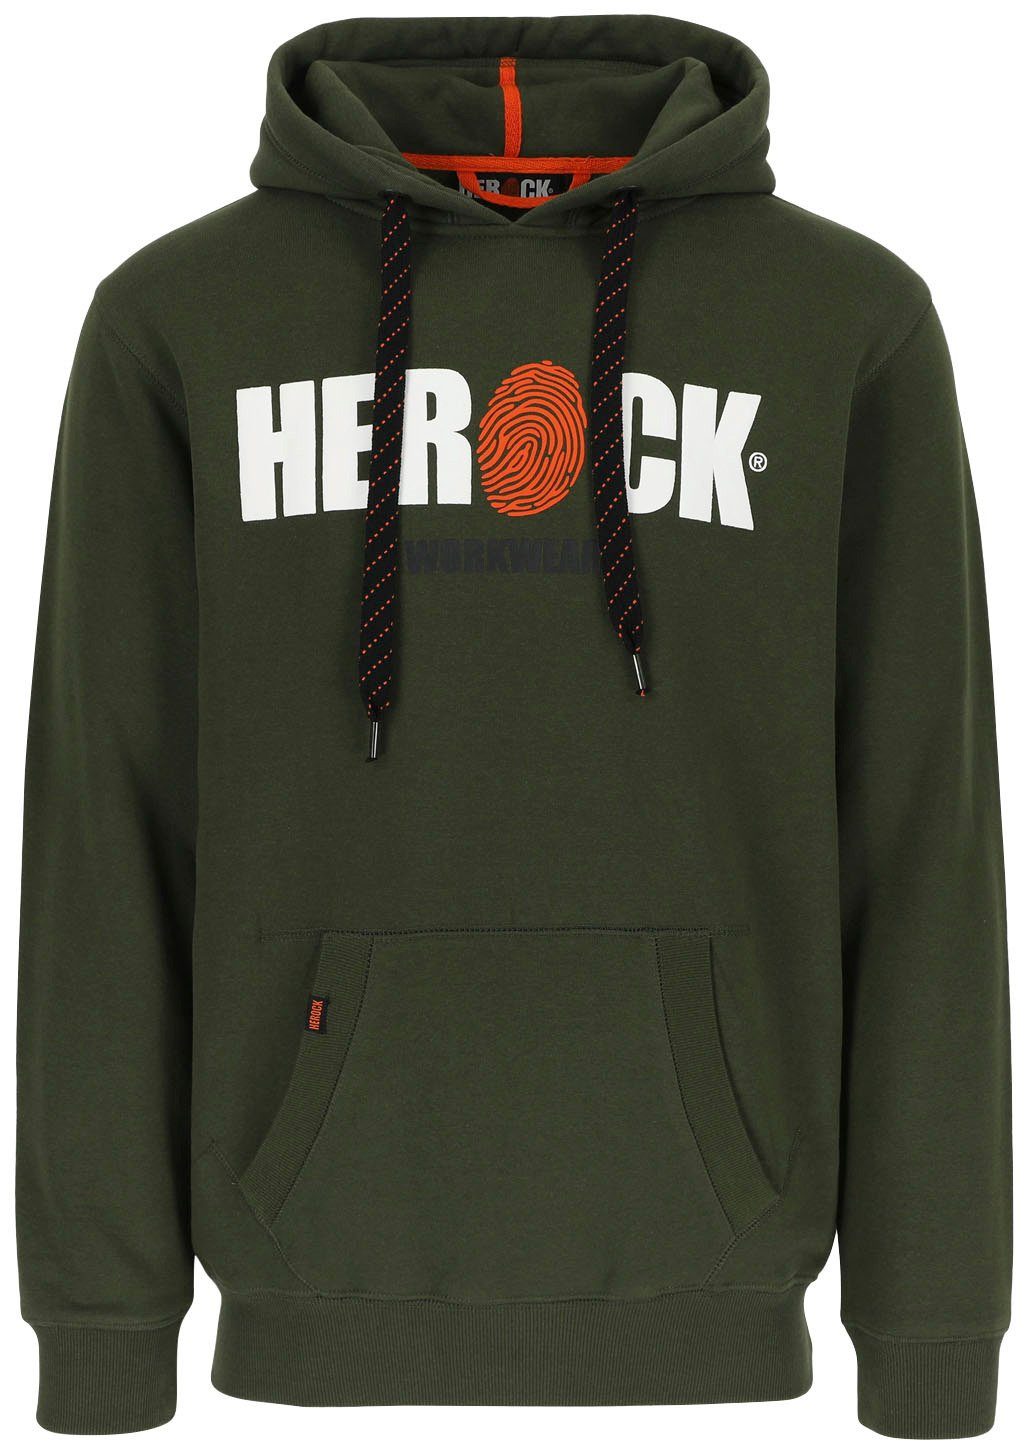 Herock Hoodie HERO Mit Herock®-Aufdruck, Kangurutasche, sehr angenehm und  weich | Sweatshirts